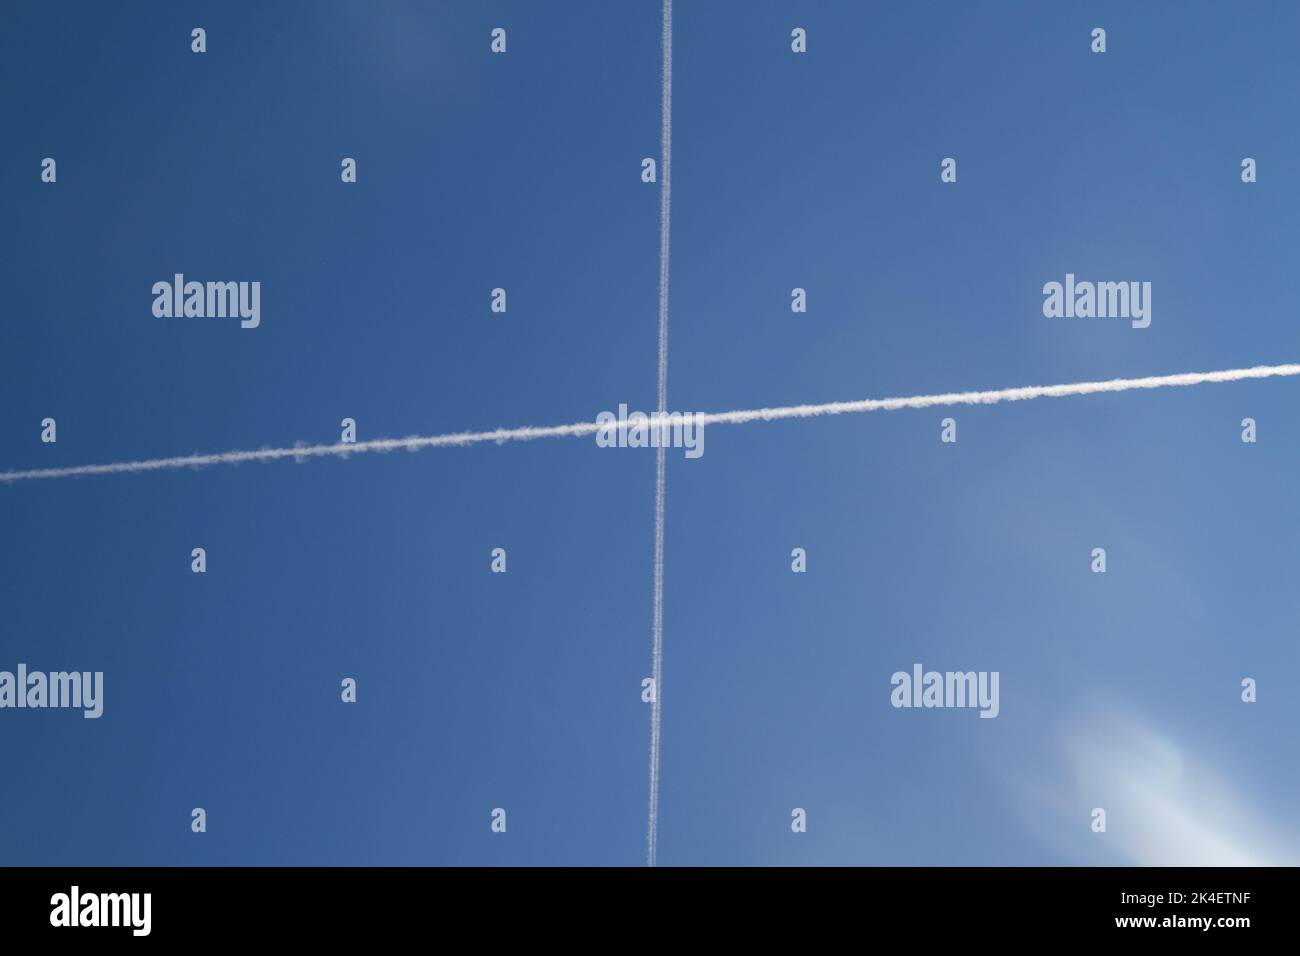 Dos senderos de condensación, estelas de vapor o estelas de vapor en un cielo azul, formando una cruz en el cielo Foto de stock